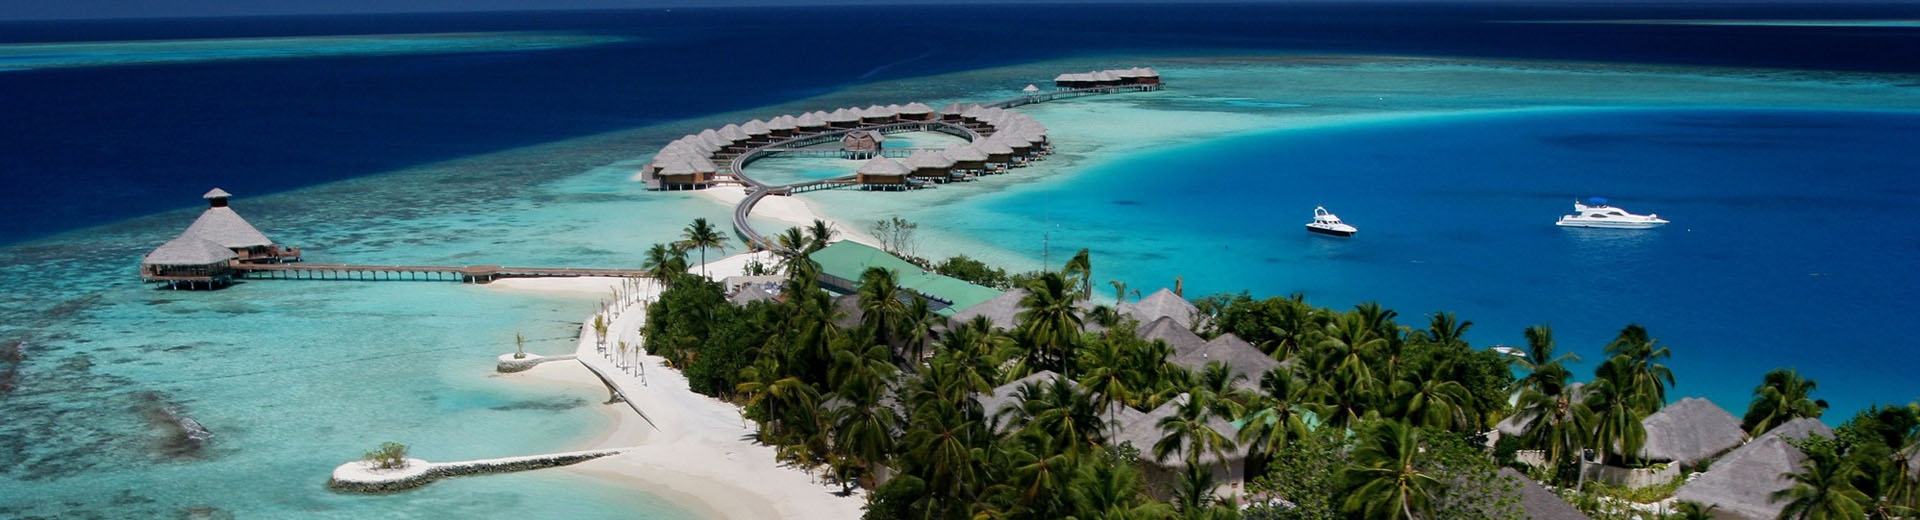 馬爾地夫旅遊飯店推薦-胡瓦芬島